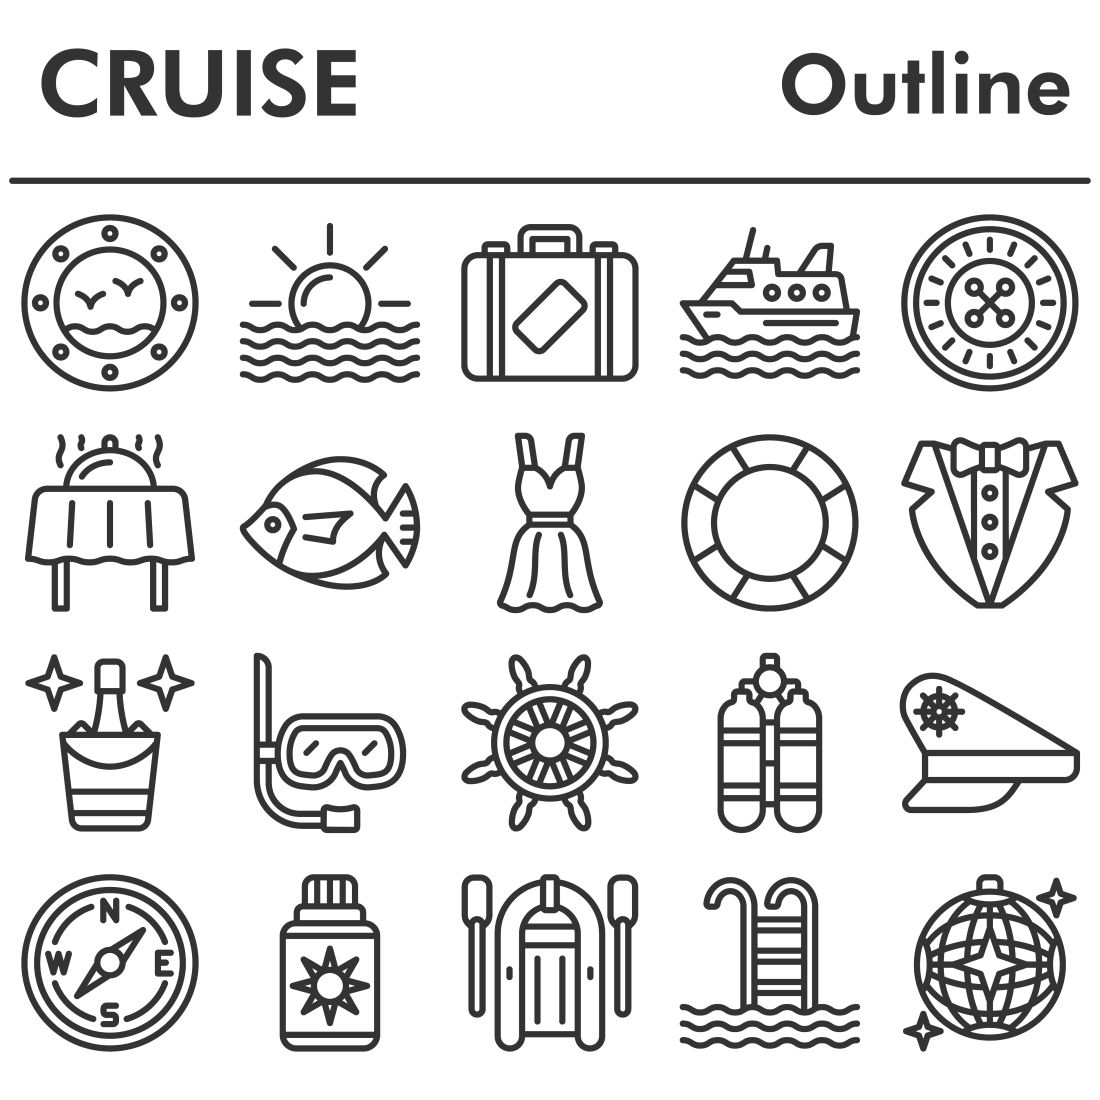 Set, cruise icons set cover image.